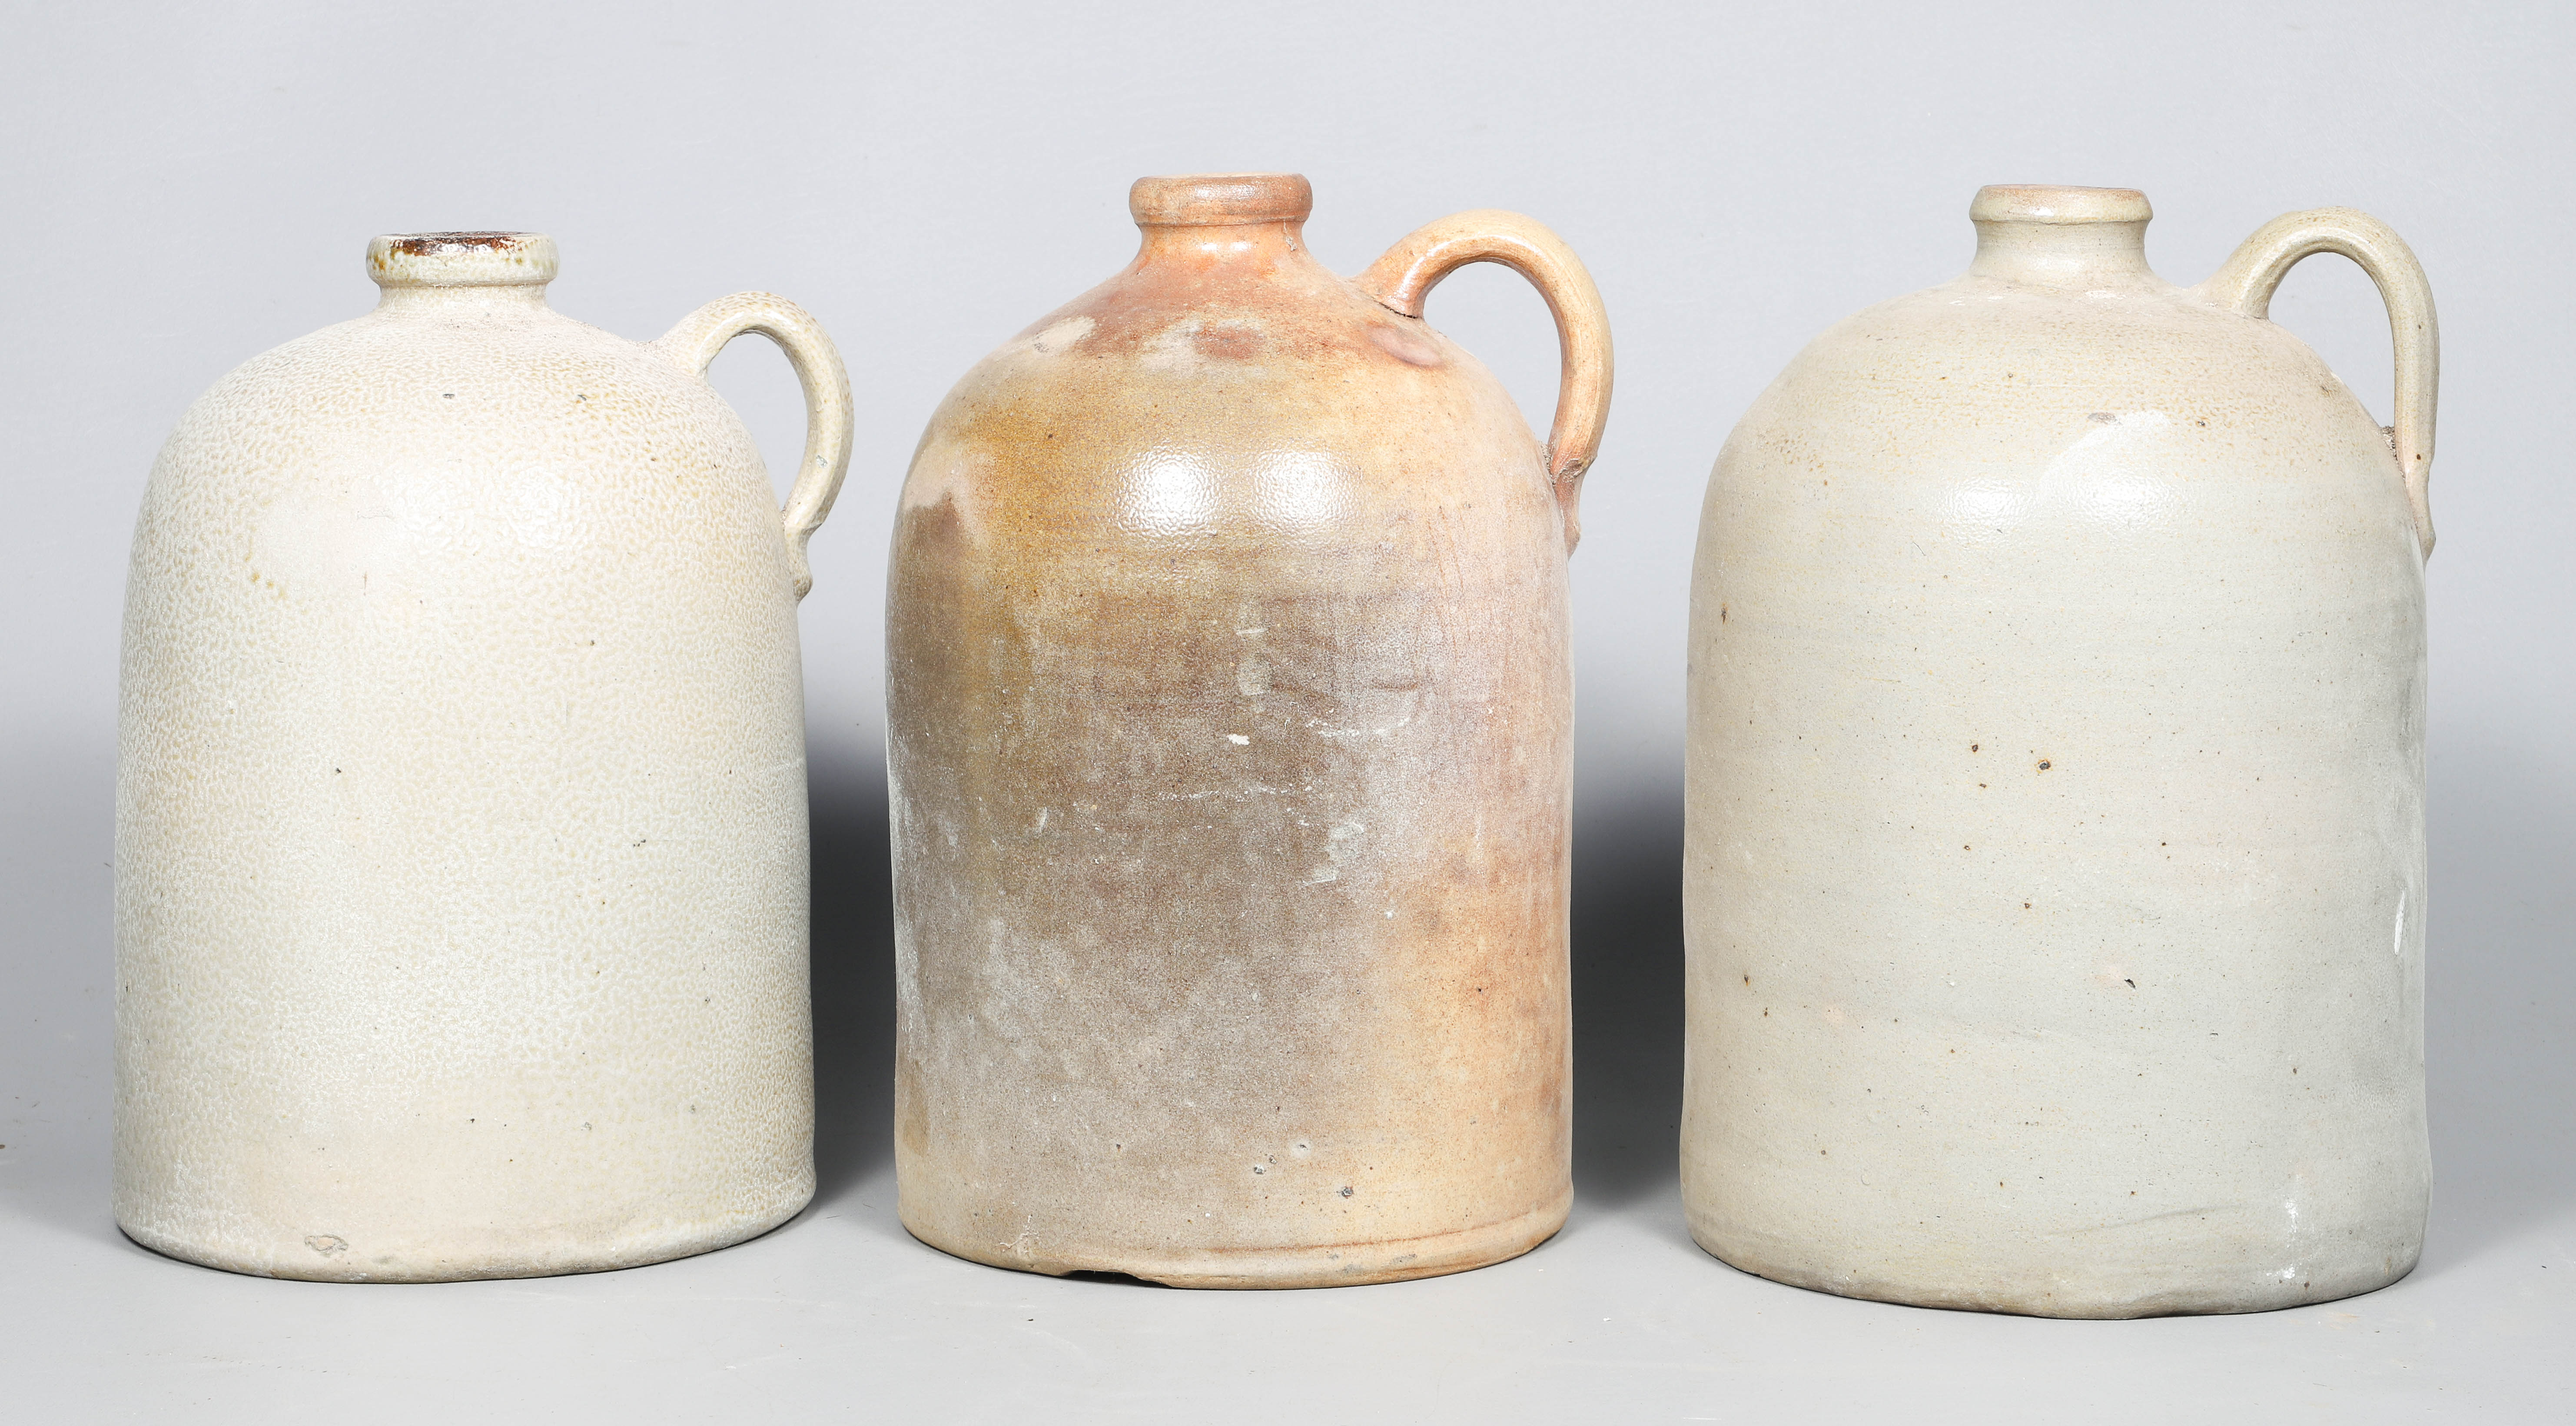  3 2 and 3 Gallon stoneware jugs 2e1965